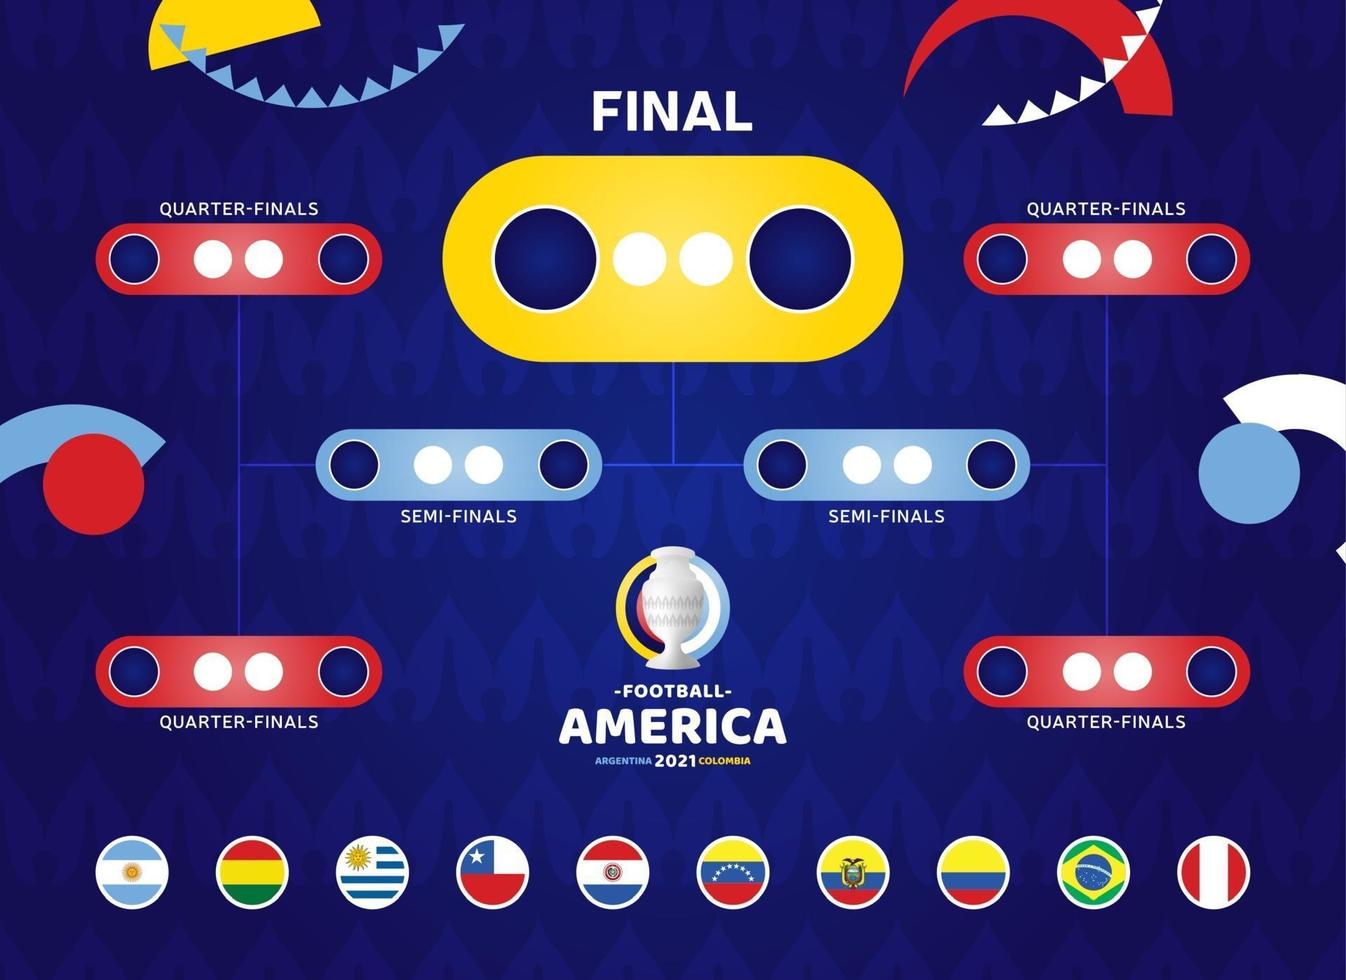 amérique du sud football 2021 argentine colombie illustration vectorielle. Tournoi de football du calendrier de la phase finale sur fond de motif vecteur